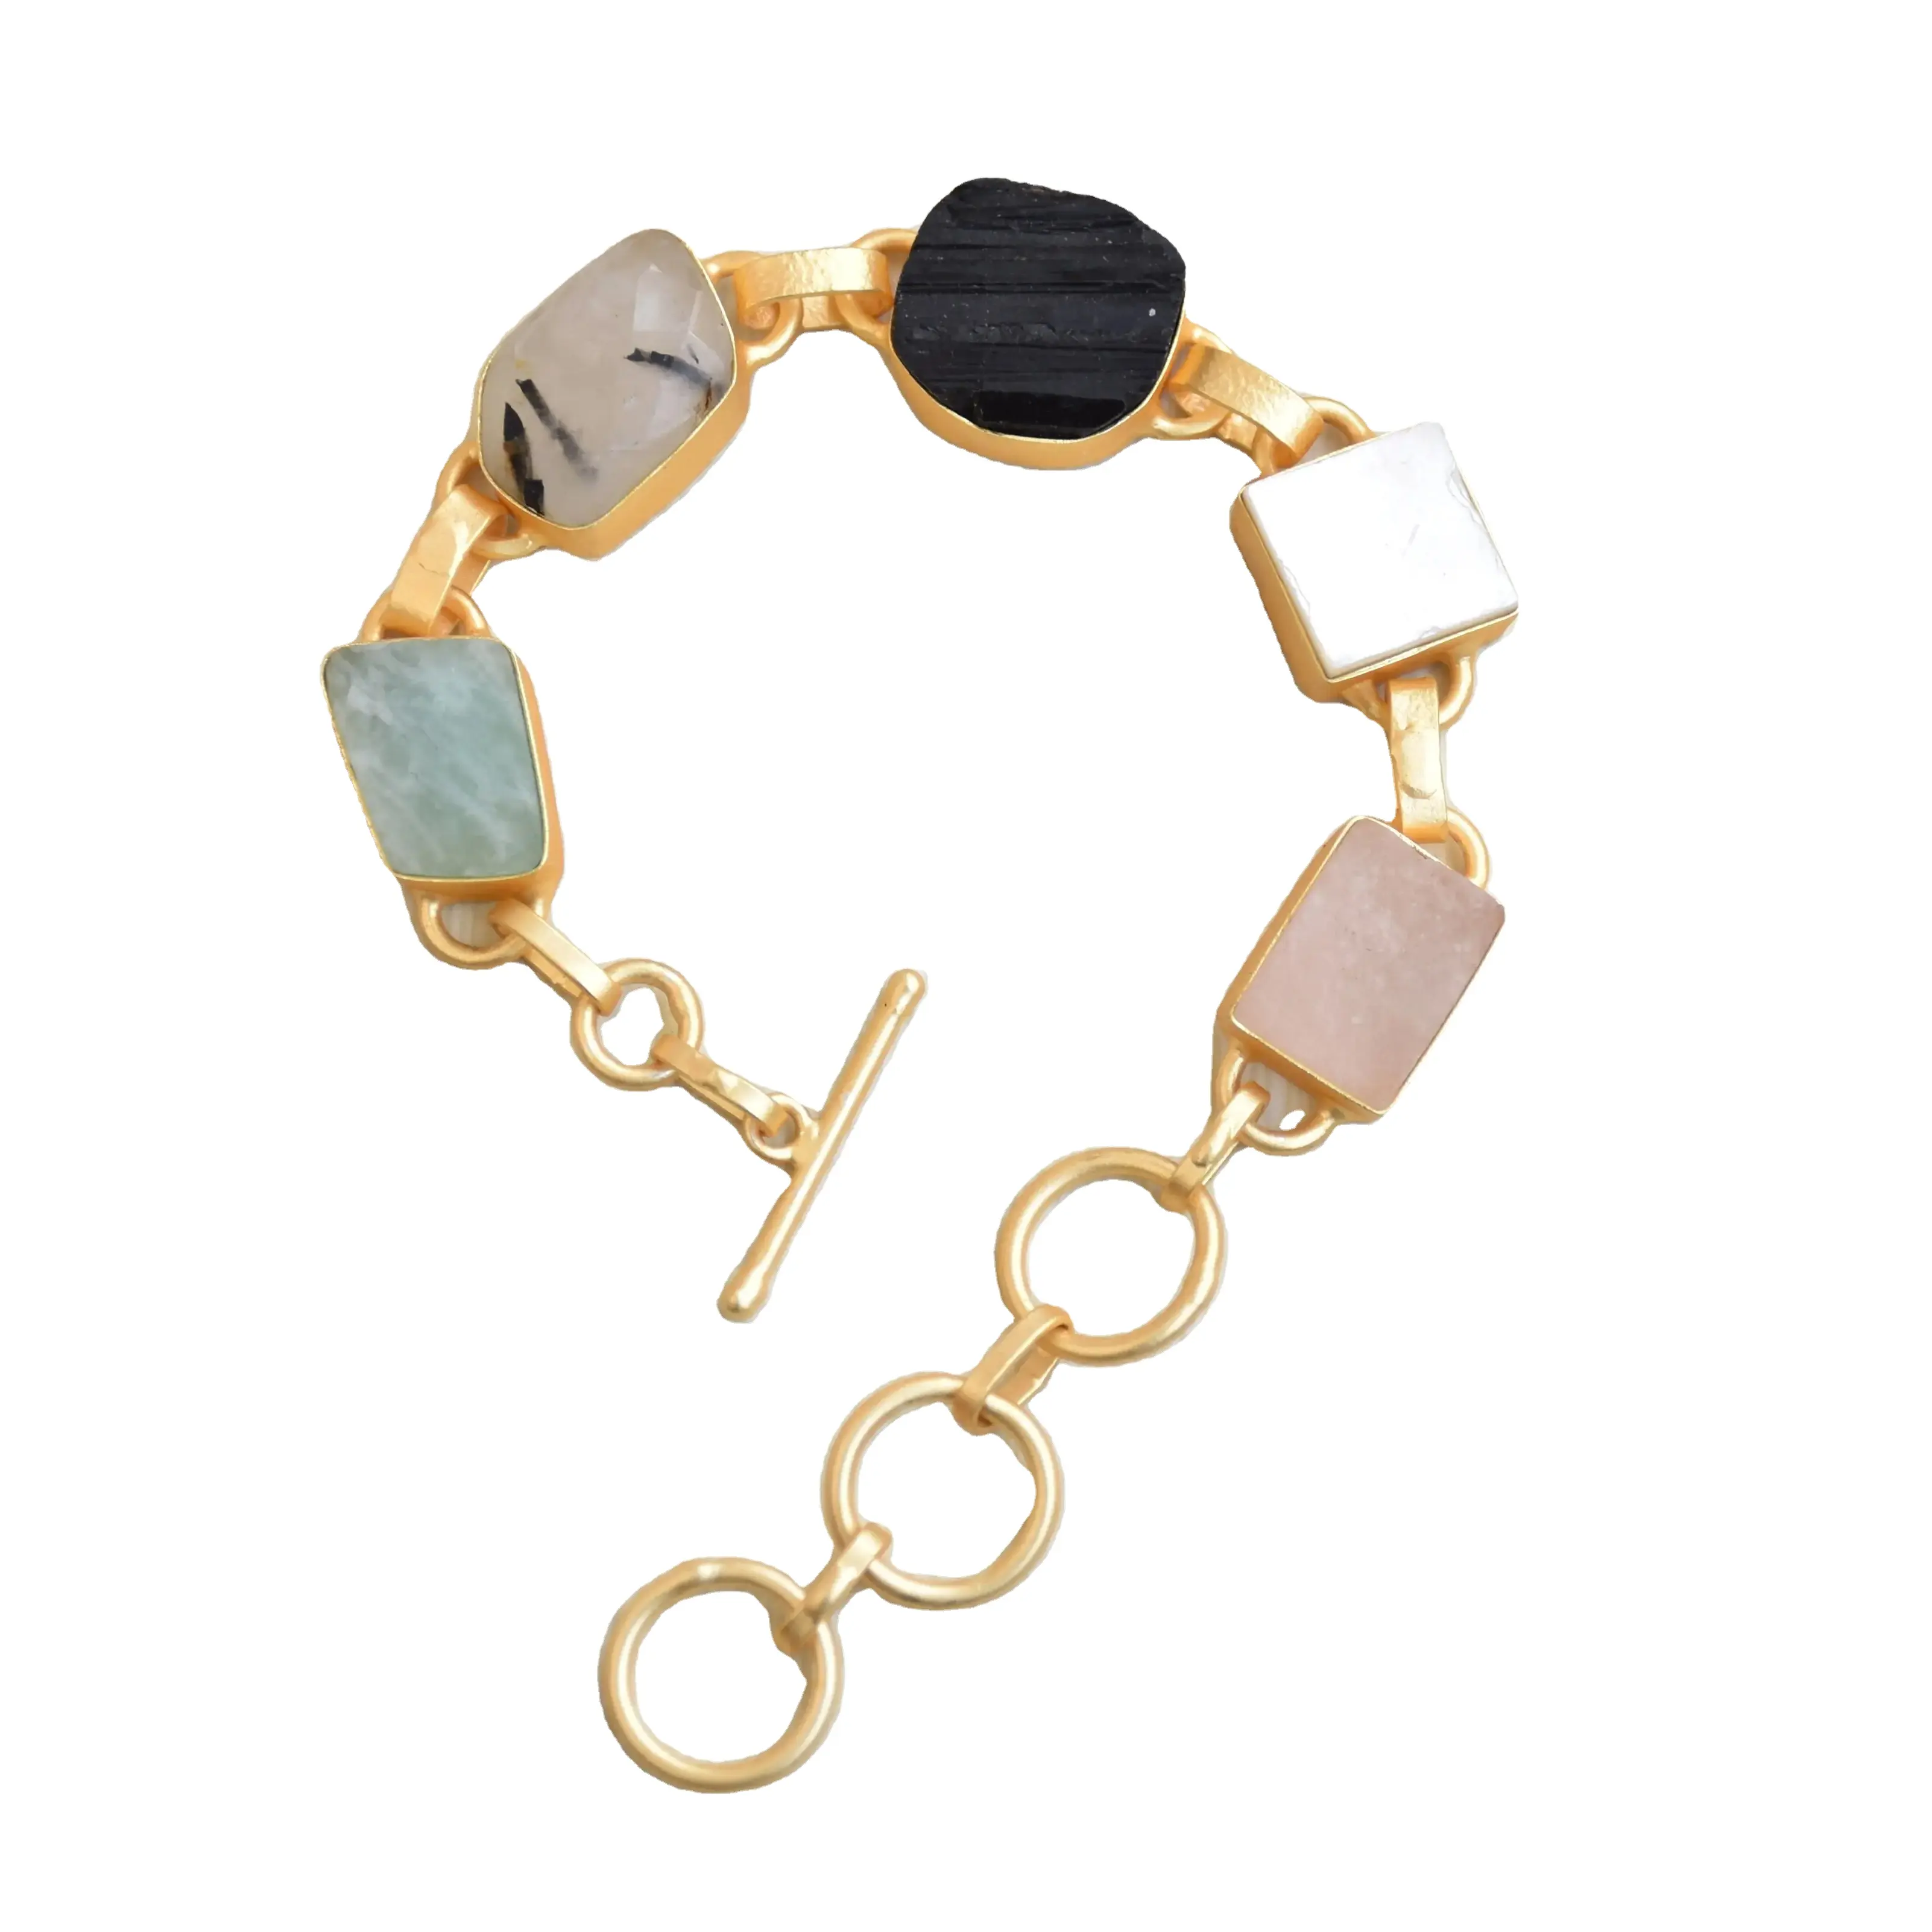 Gelang batu Multi buatan tangan mode perhiasan grosir pemasok klasik desainer batu Semi mulia gelang Terkenal